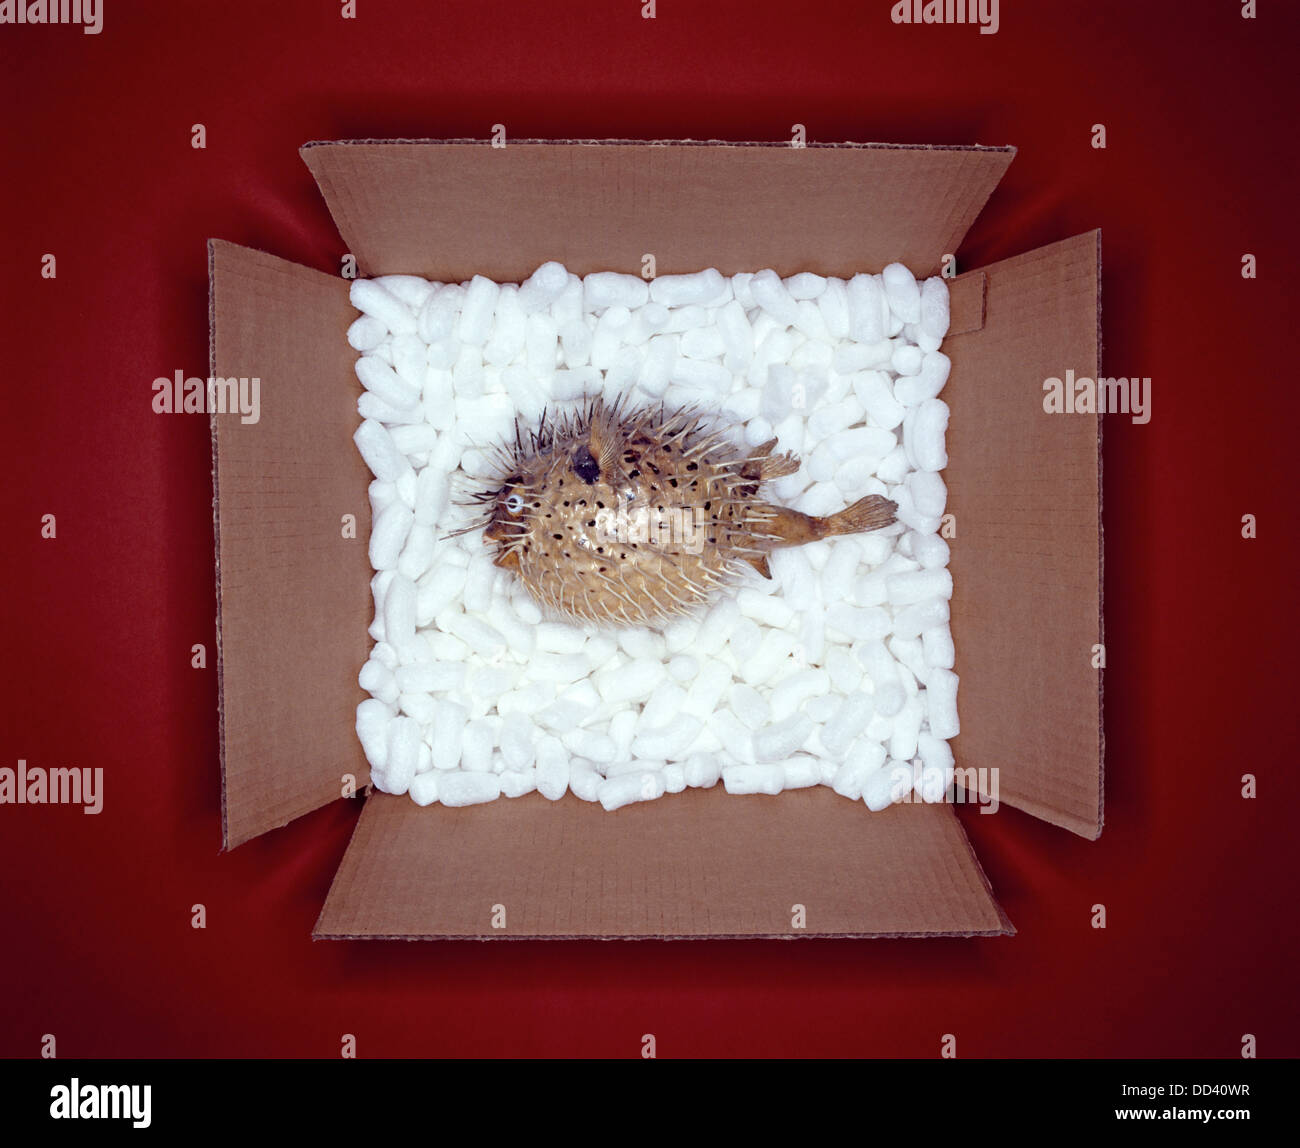 Un poisson-globe dans une boîte en carton blanc avec du matériel d'emballage Banque D'Images